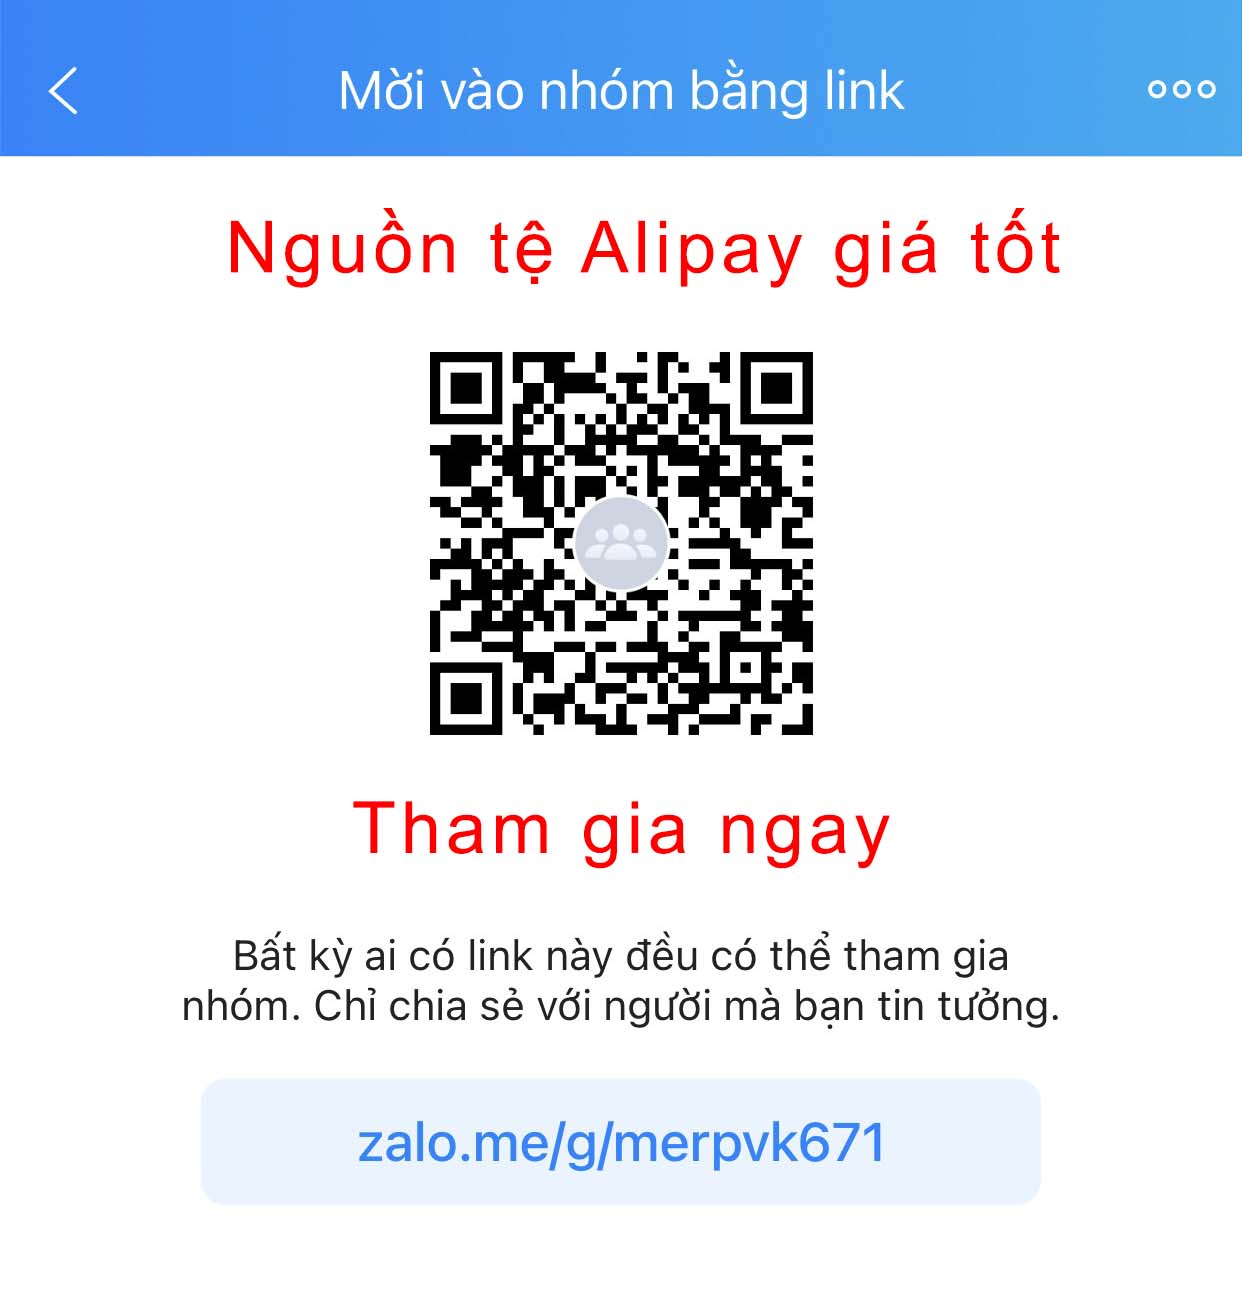 Hướng dẫn tạo tài khoản Alipay không cần thẻ ngân hàng Trung Quốc